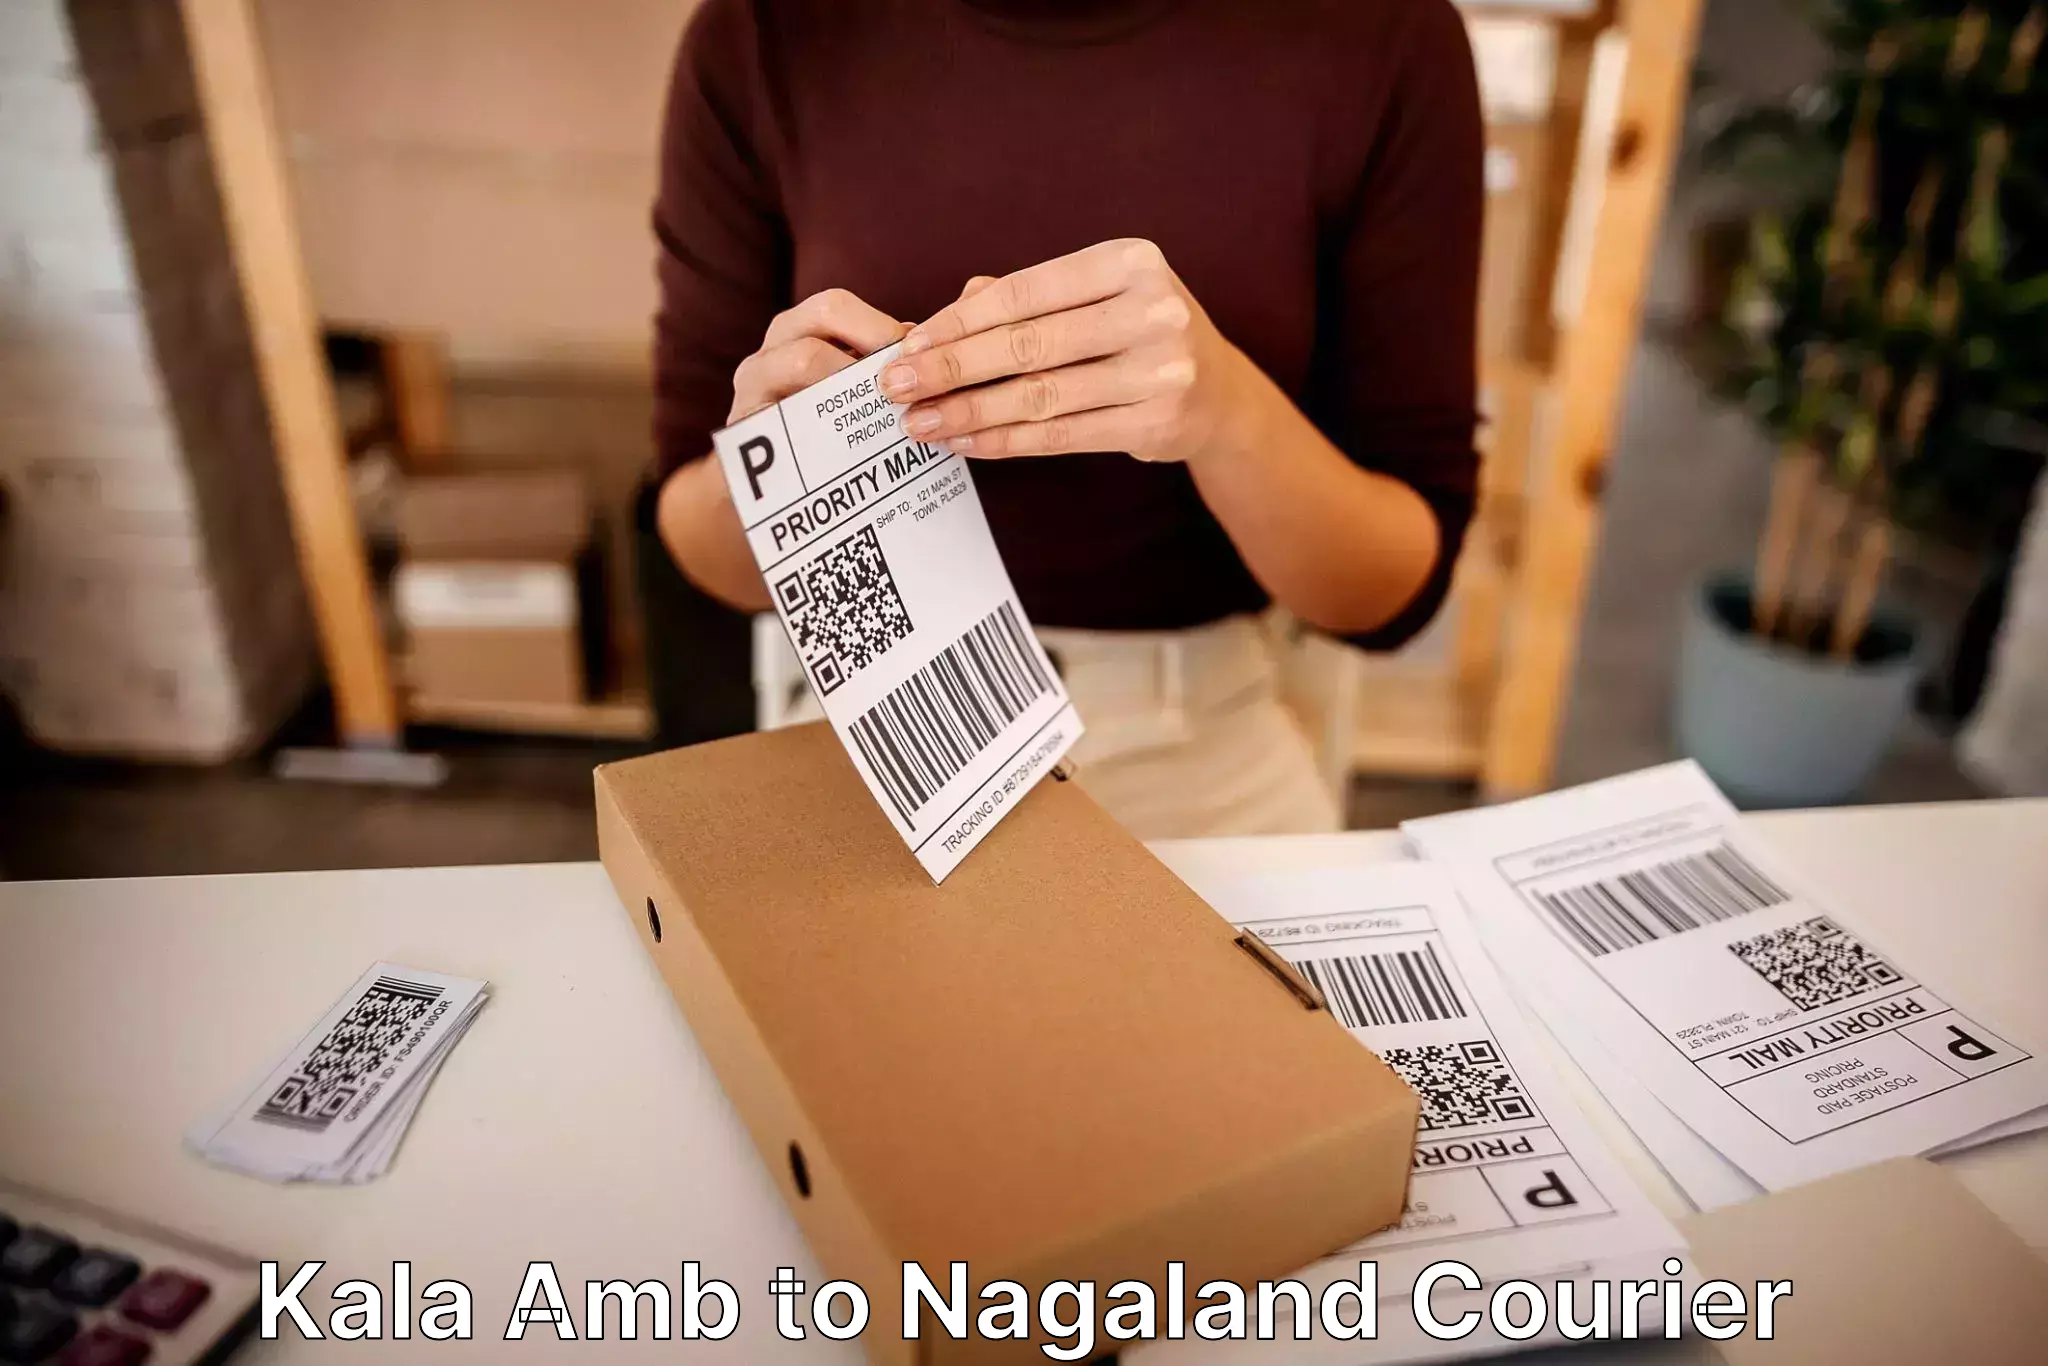 Efficient packing and moving Kala Amb to Nagaland